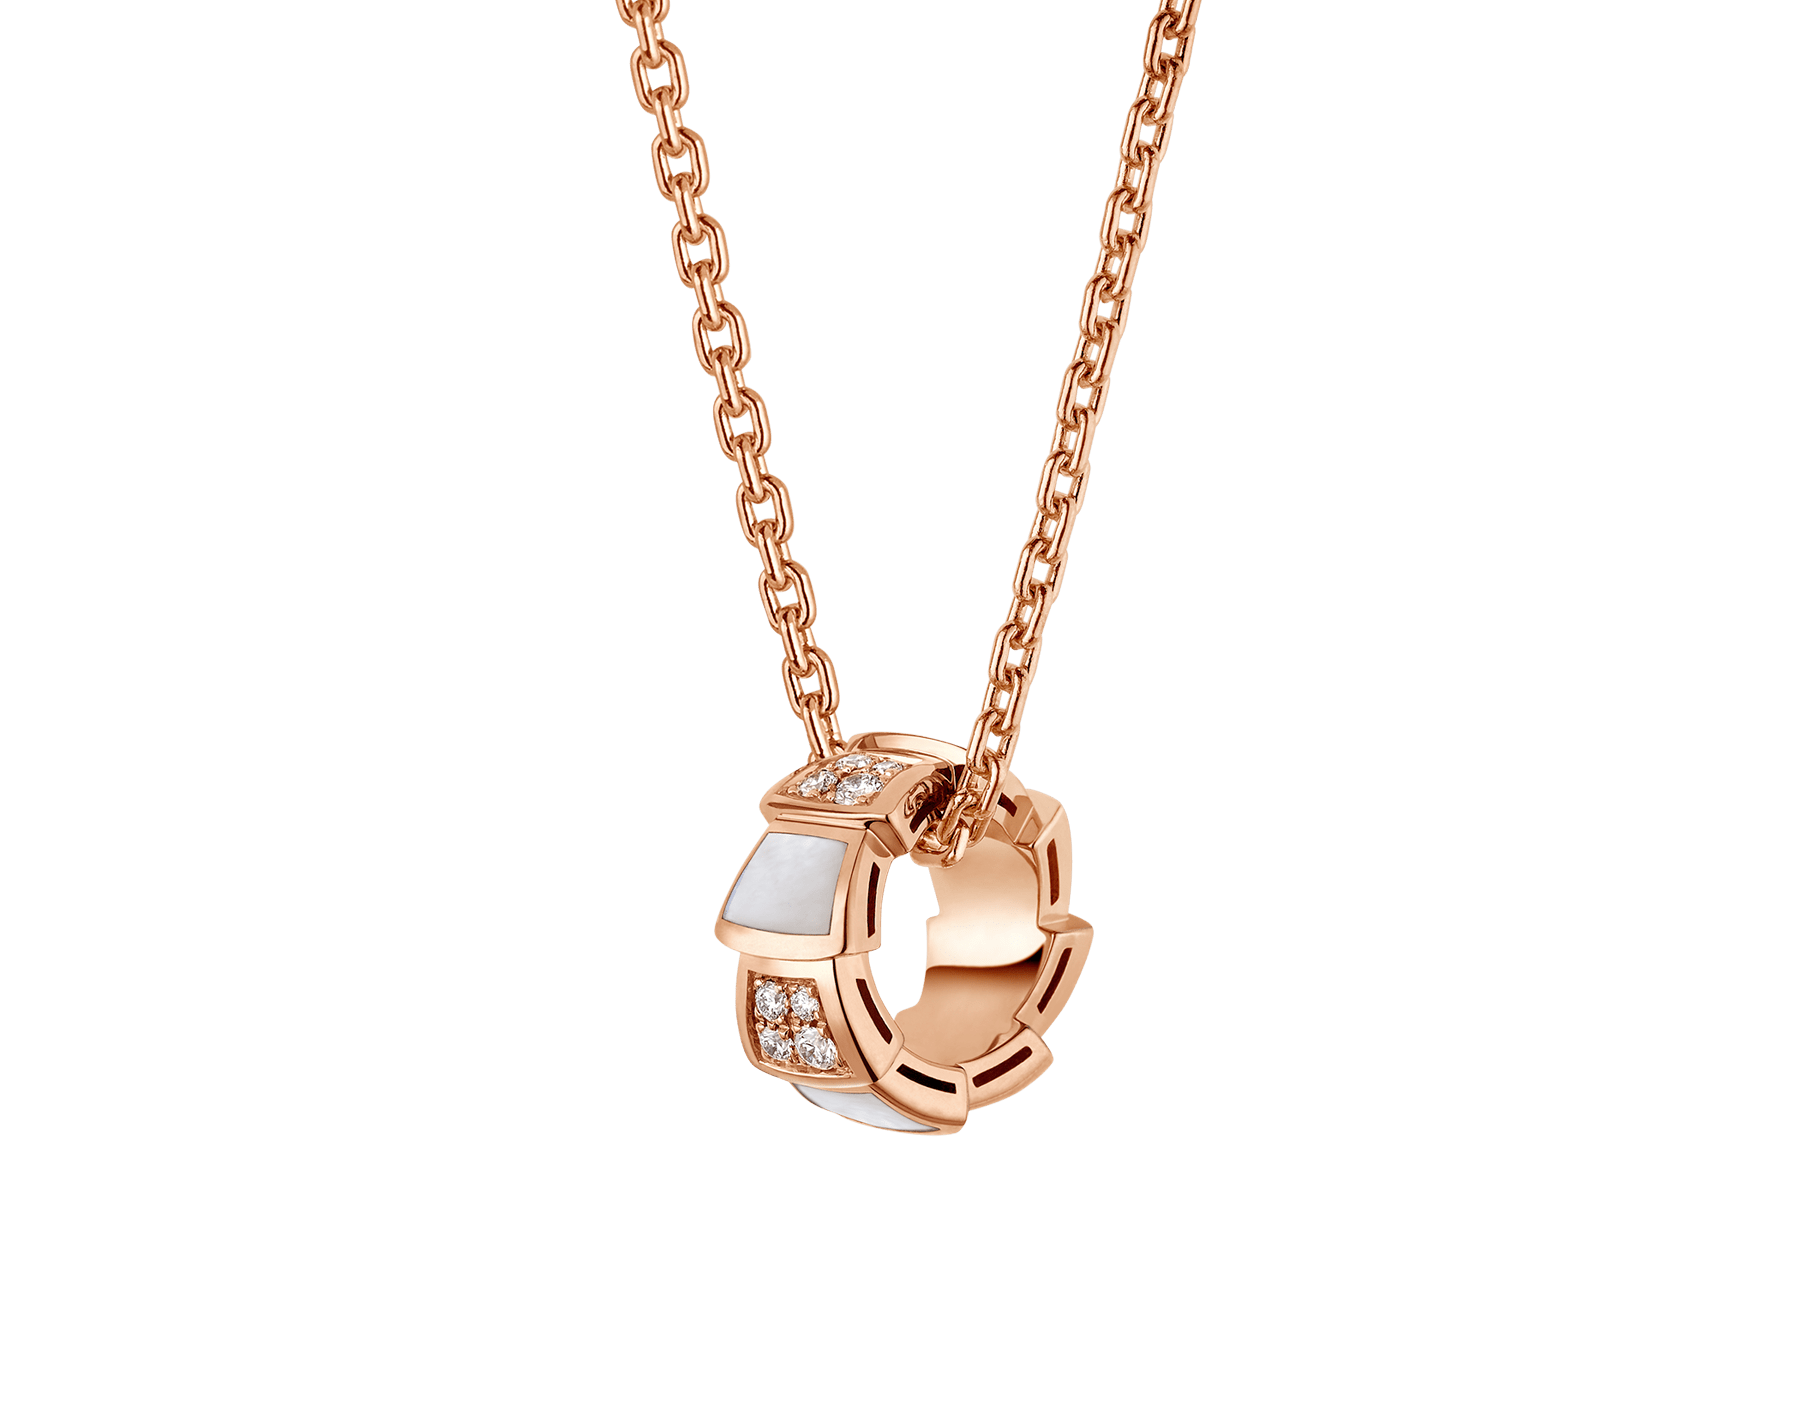 Atacado de joias de design personalizado com colar de ouro rosa 18 kt com elementos de madrepérola e pavé de diamantes no pingente Joias OEM/ODM